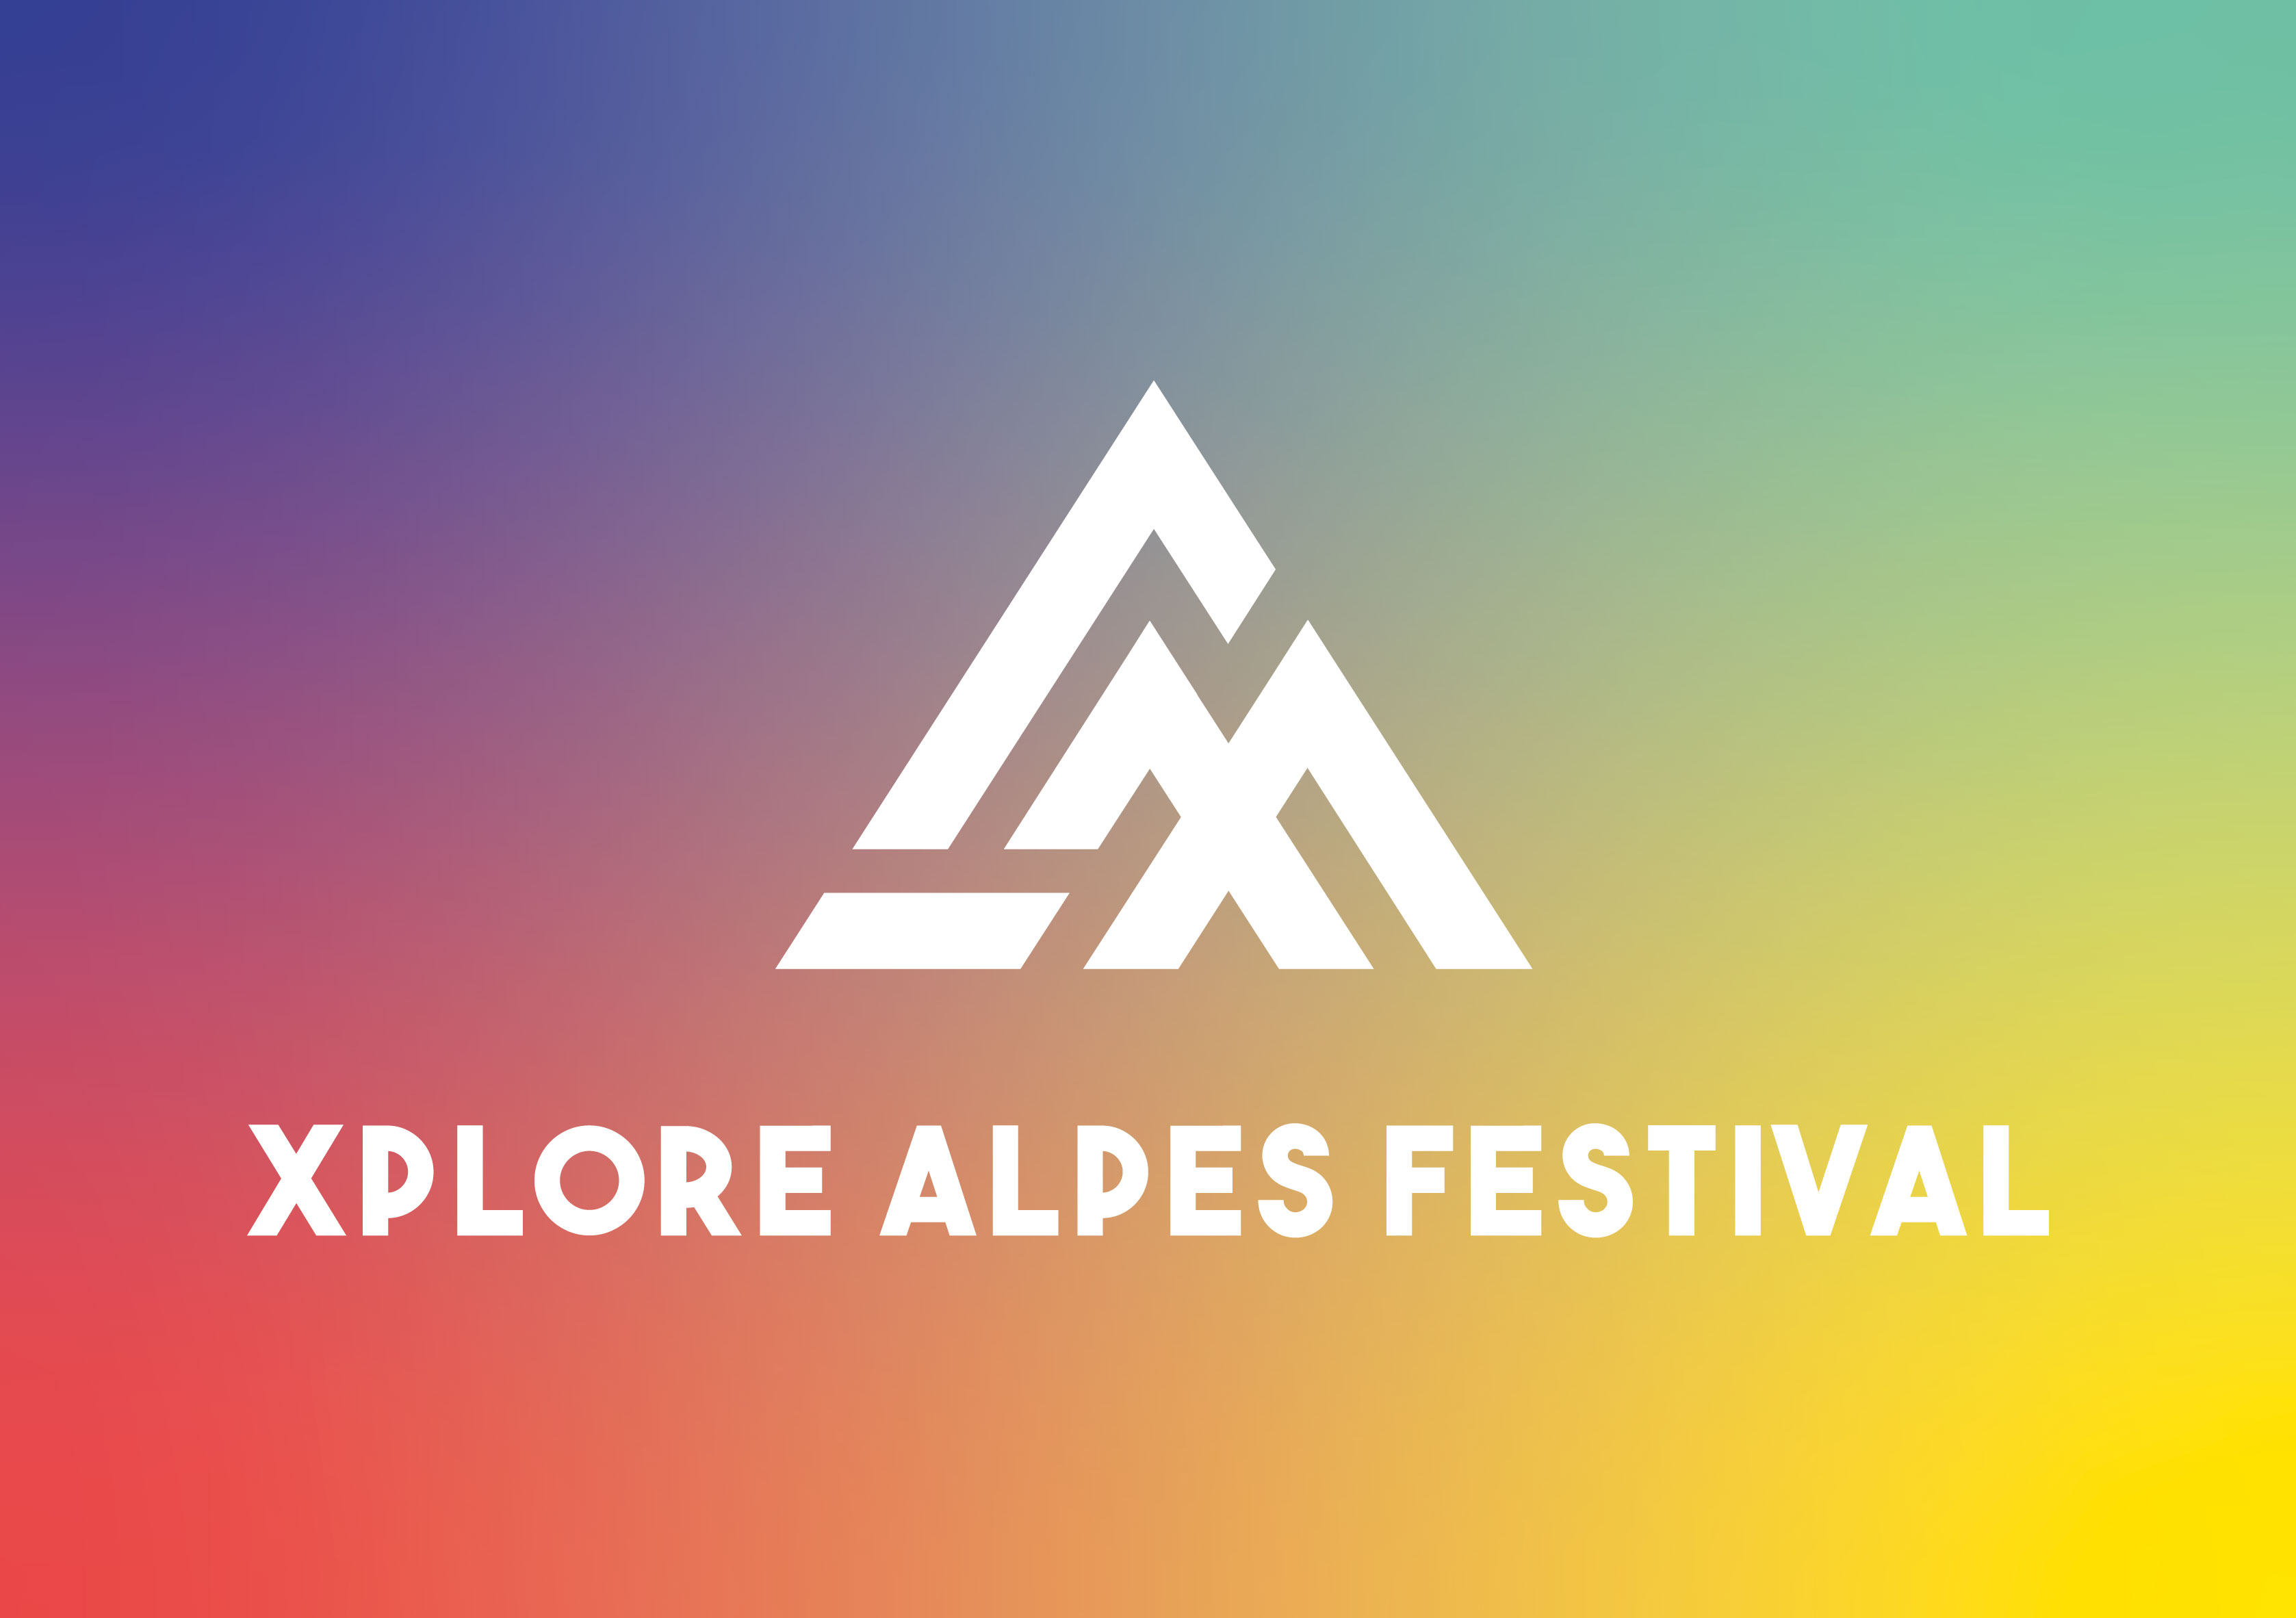 Xplore Alpes Festival cet automne à Tignes